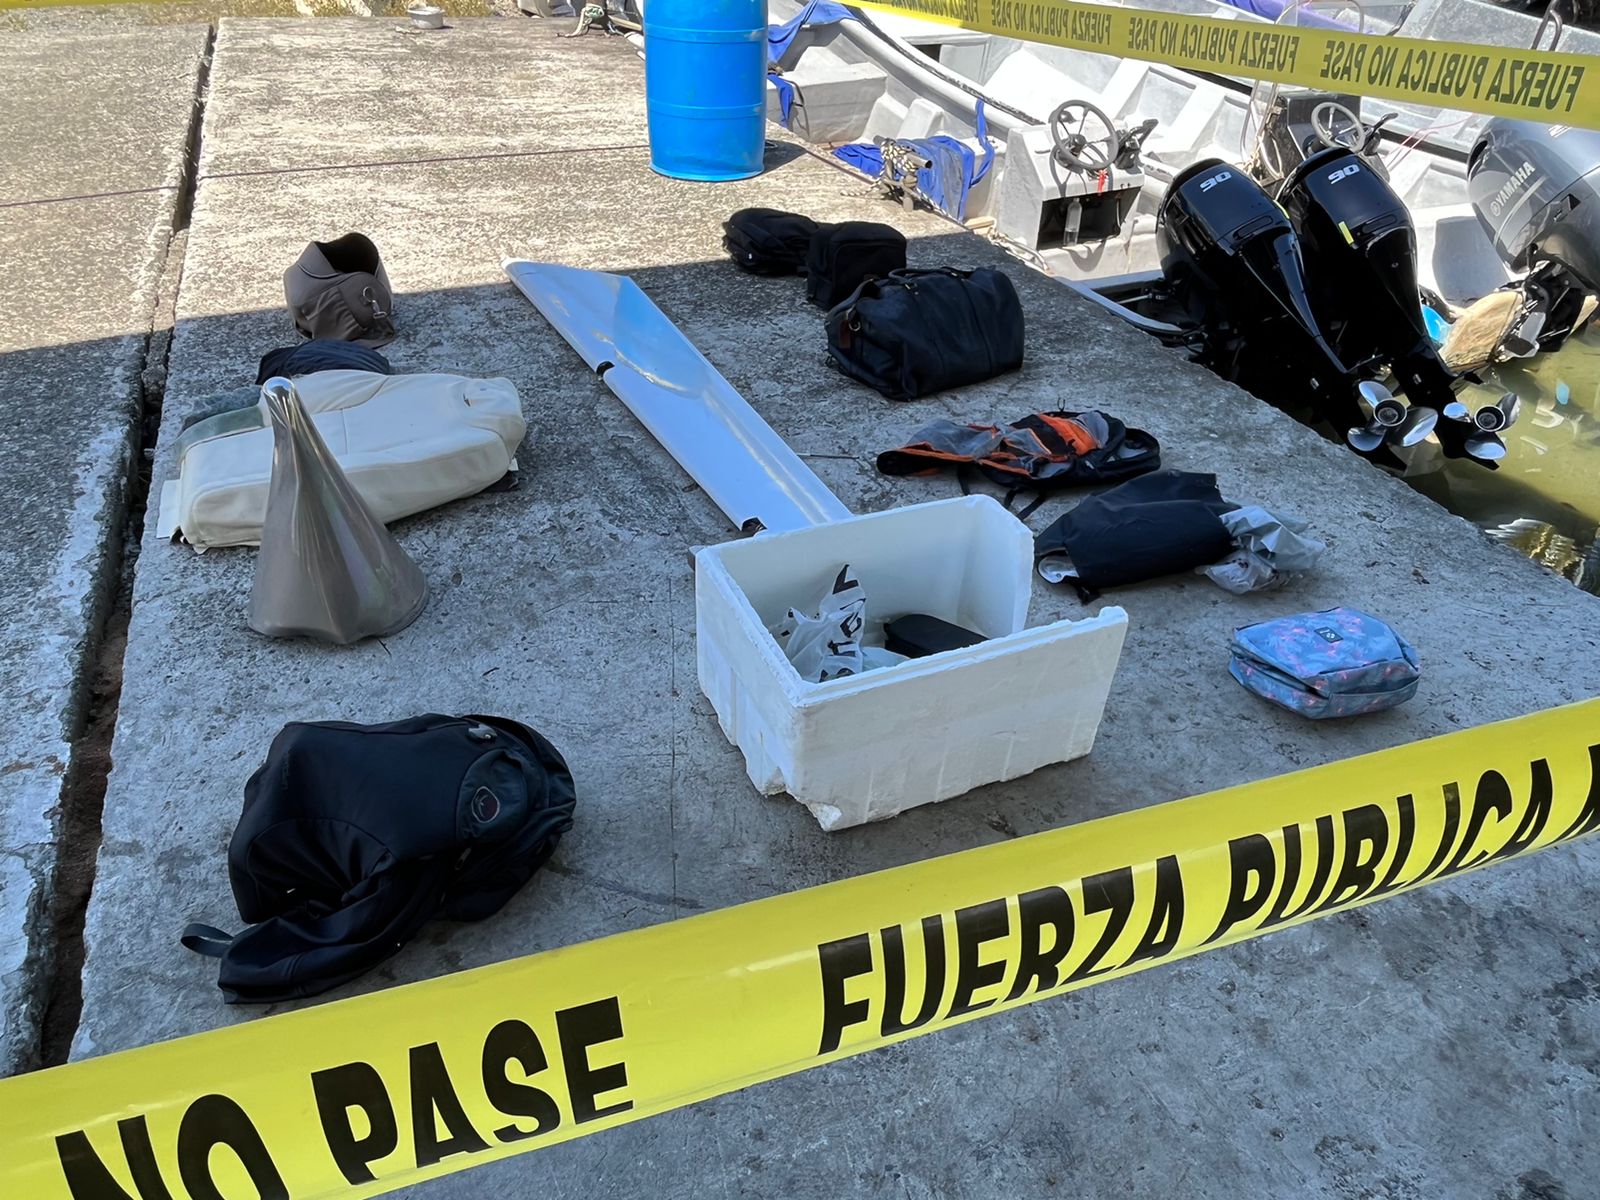 Doce días después del accidente aéreo en Limón medicatura forense no ha identificado los dos cuerpos encontrados